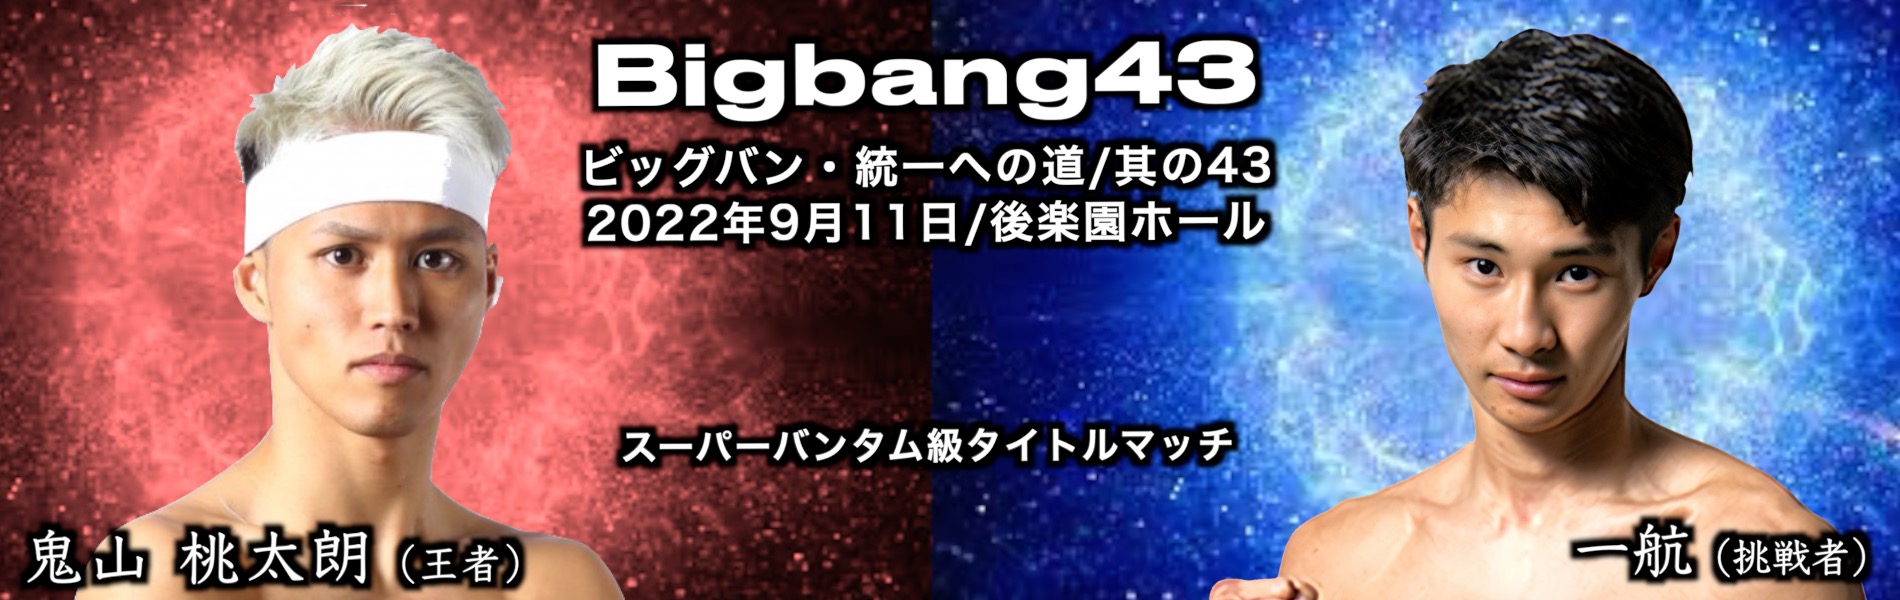 Bigbang43 対戦カード発表